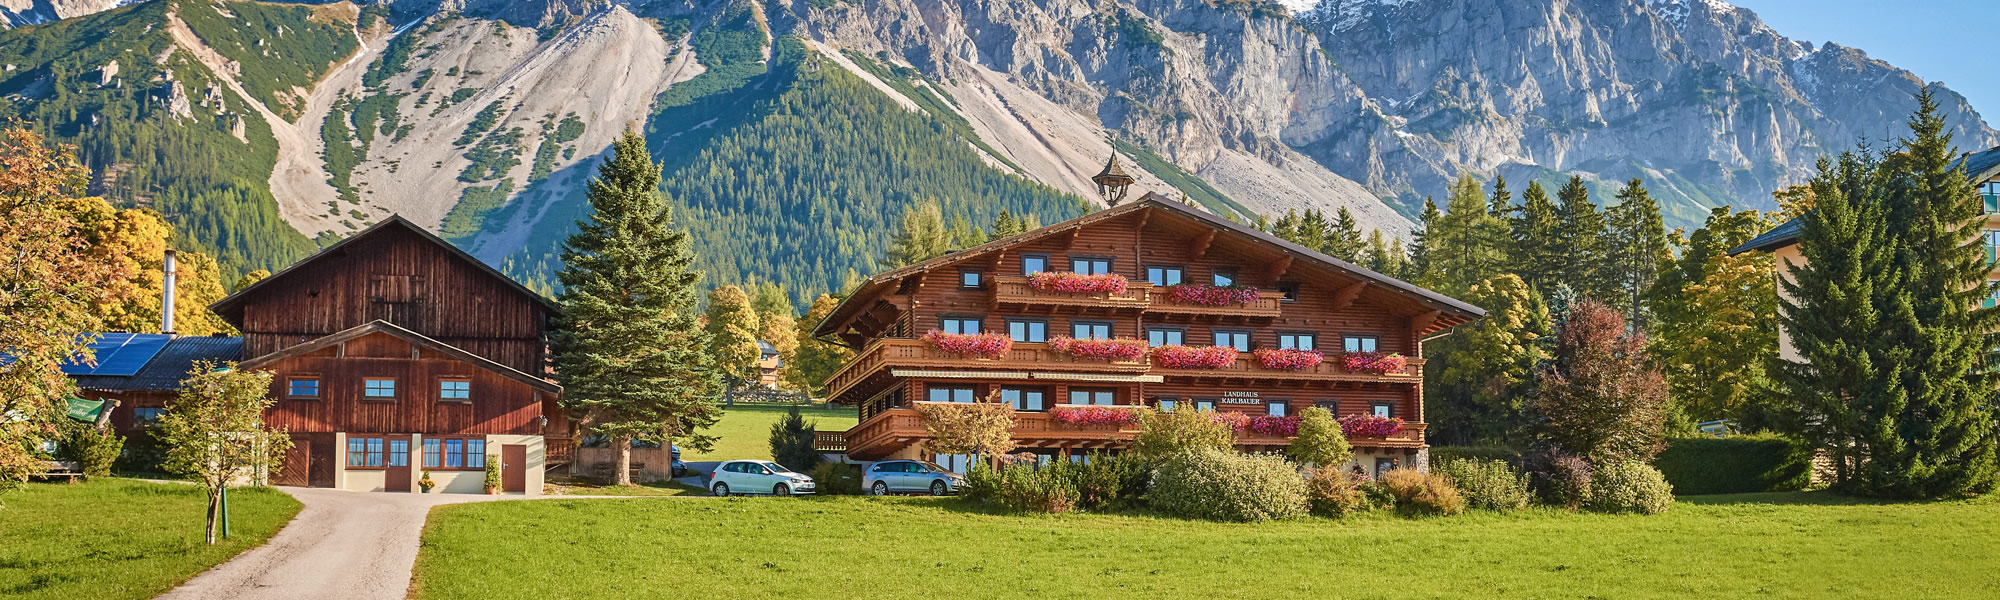 Landhaus Karlbauer in Ramsau am Dachstein - Ihr Urlaubshotel mit Hallenbad - Wanderungen direkt vom Hotel